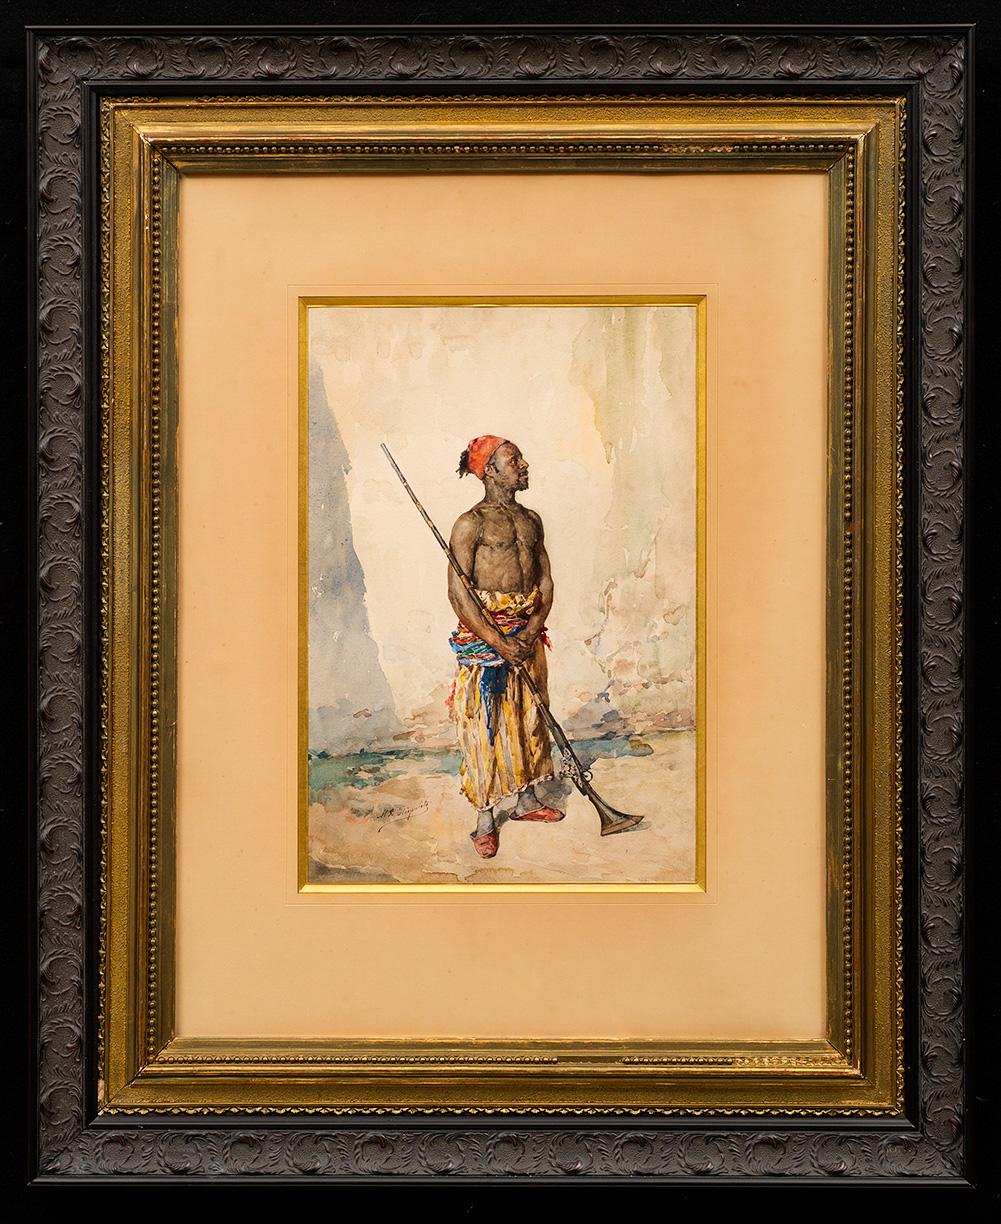 Orientalistischer maurischer Soldat mit Wappen, Manuel Garcia Hispaleto, Manuel Garcia Hispaleto 